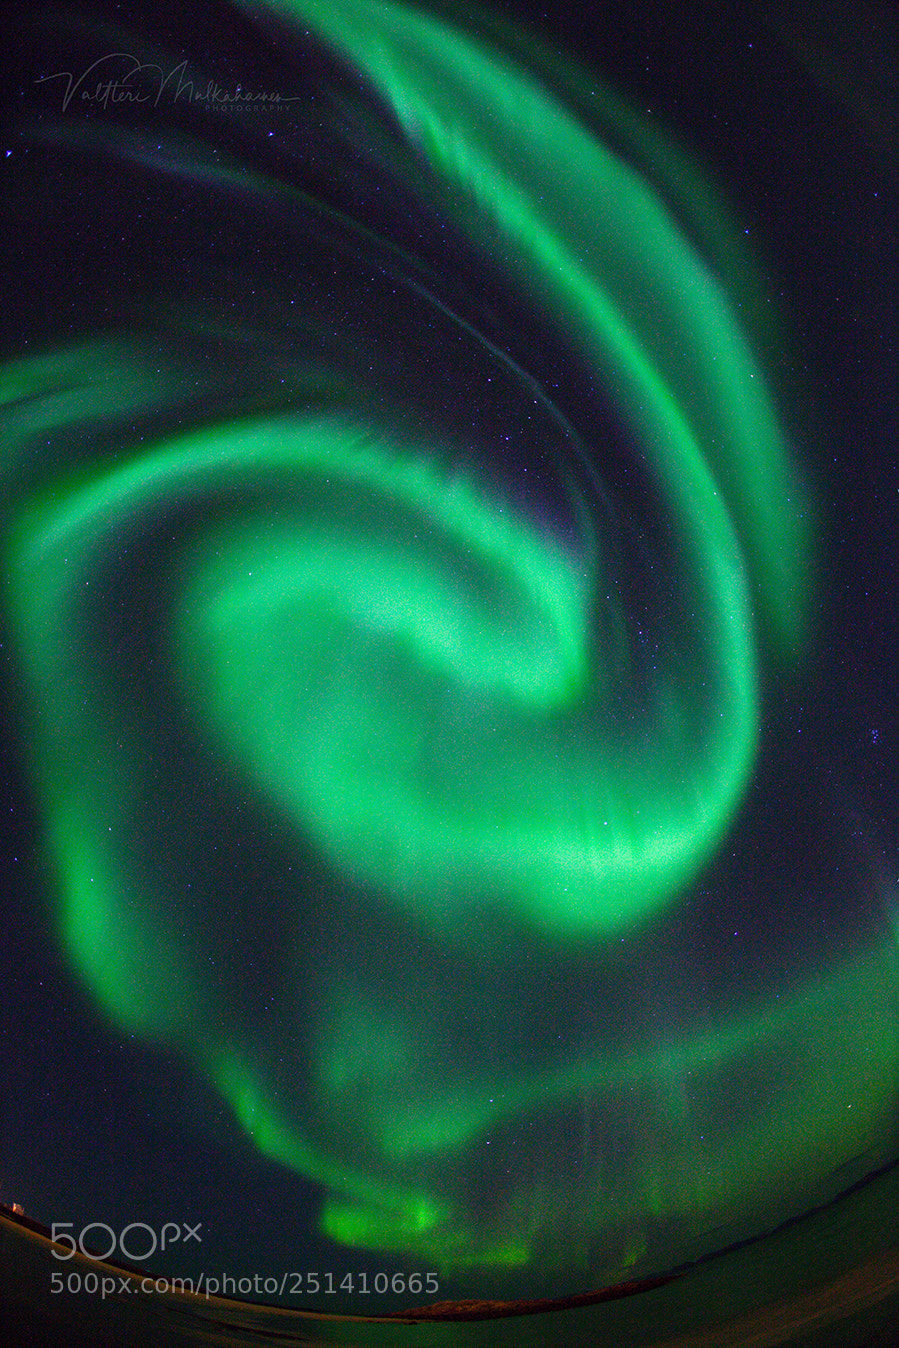 Canon EOS 5D Mark II sample photo. Aurora borealis in scandinavia photography